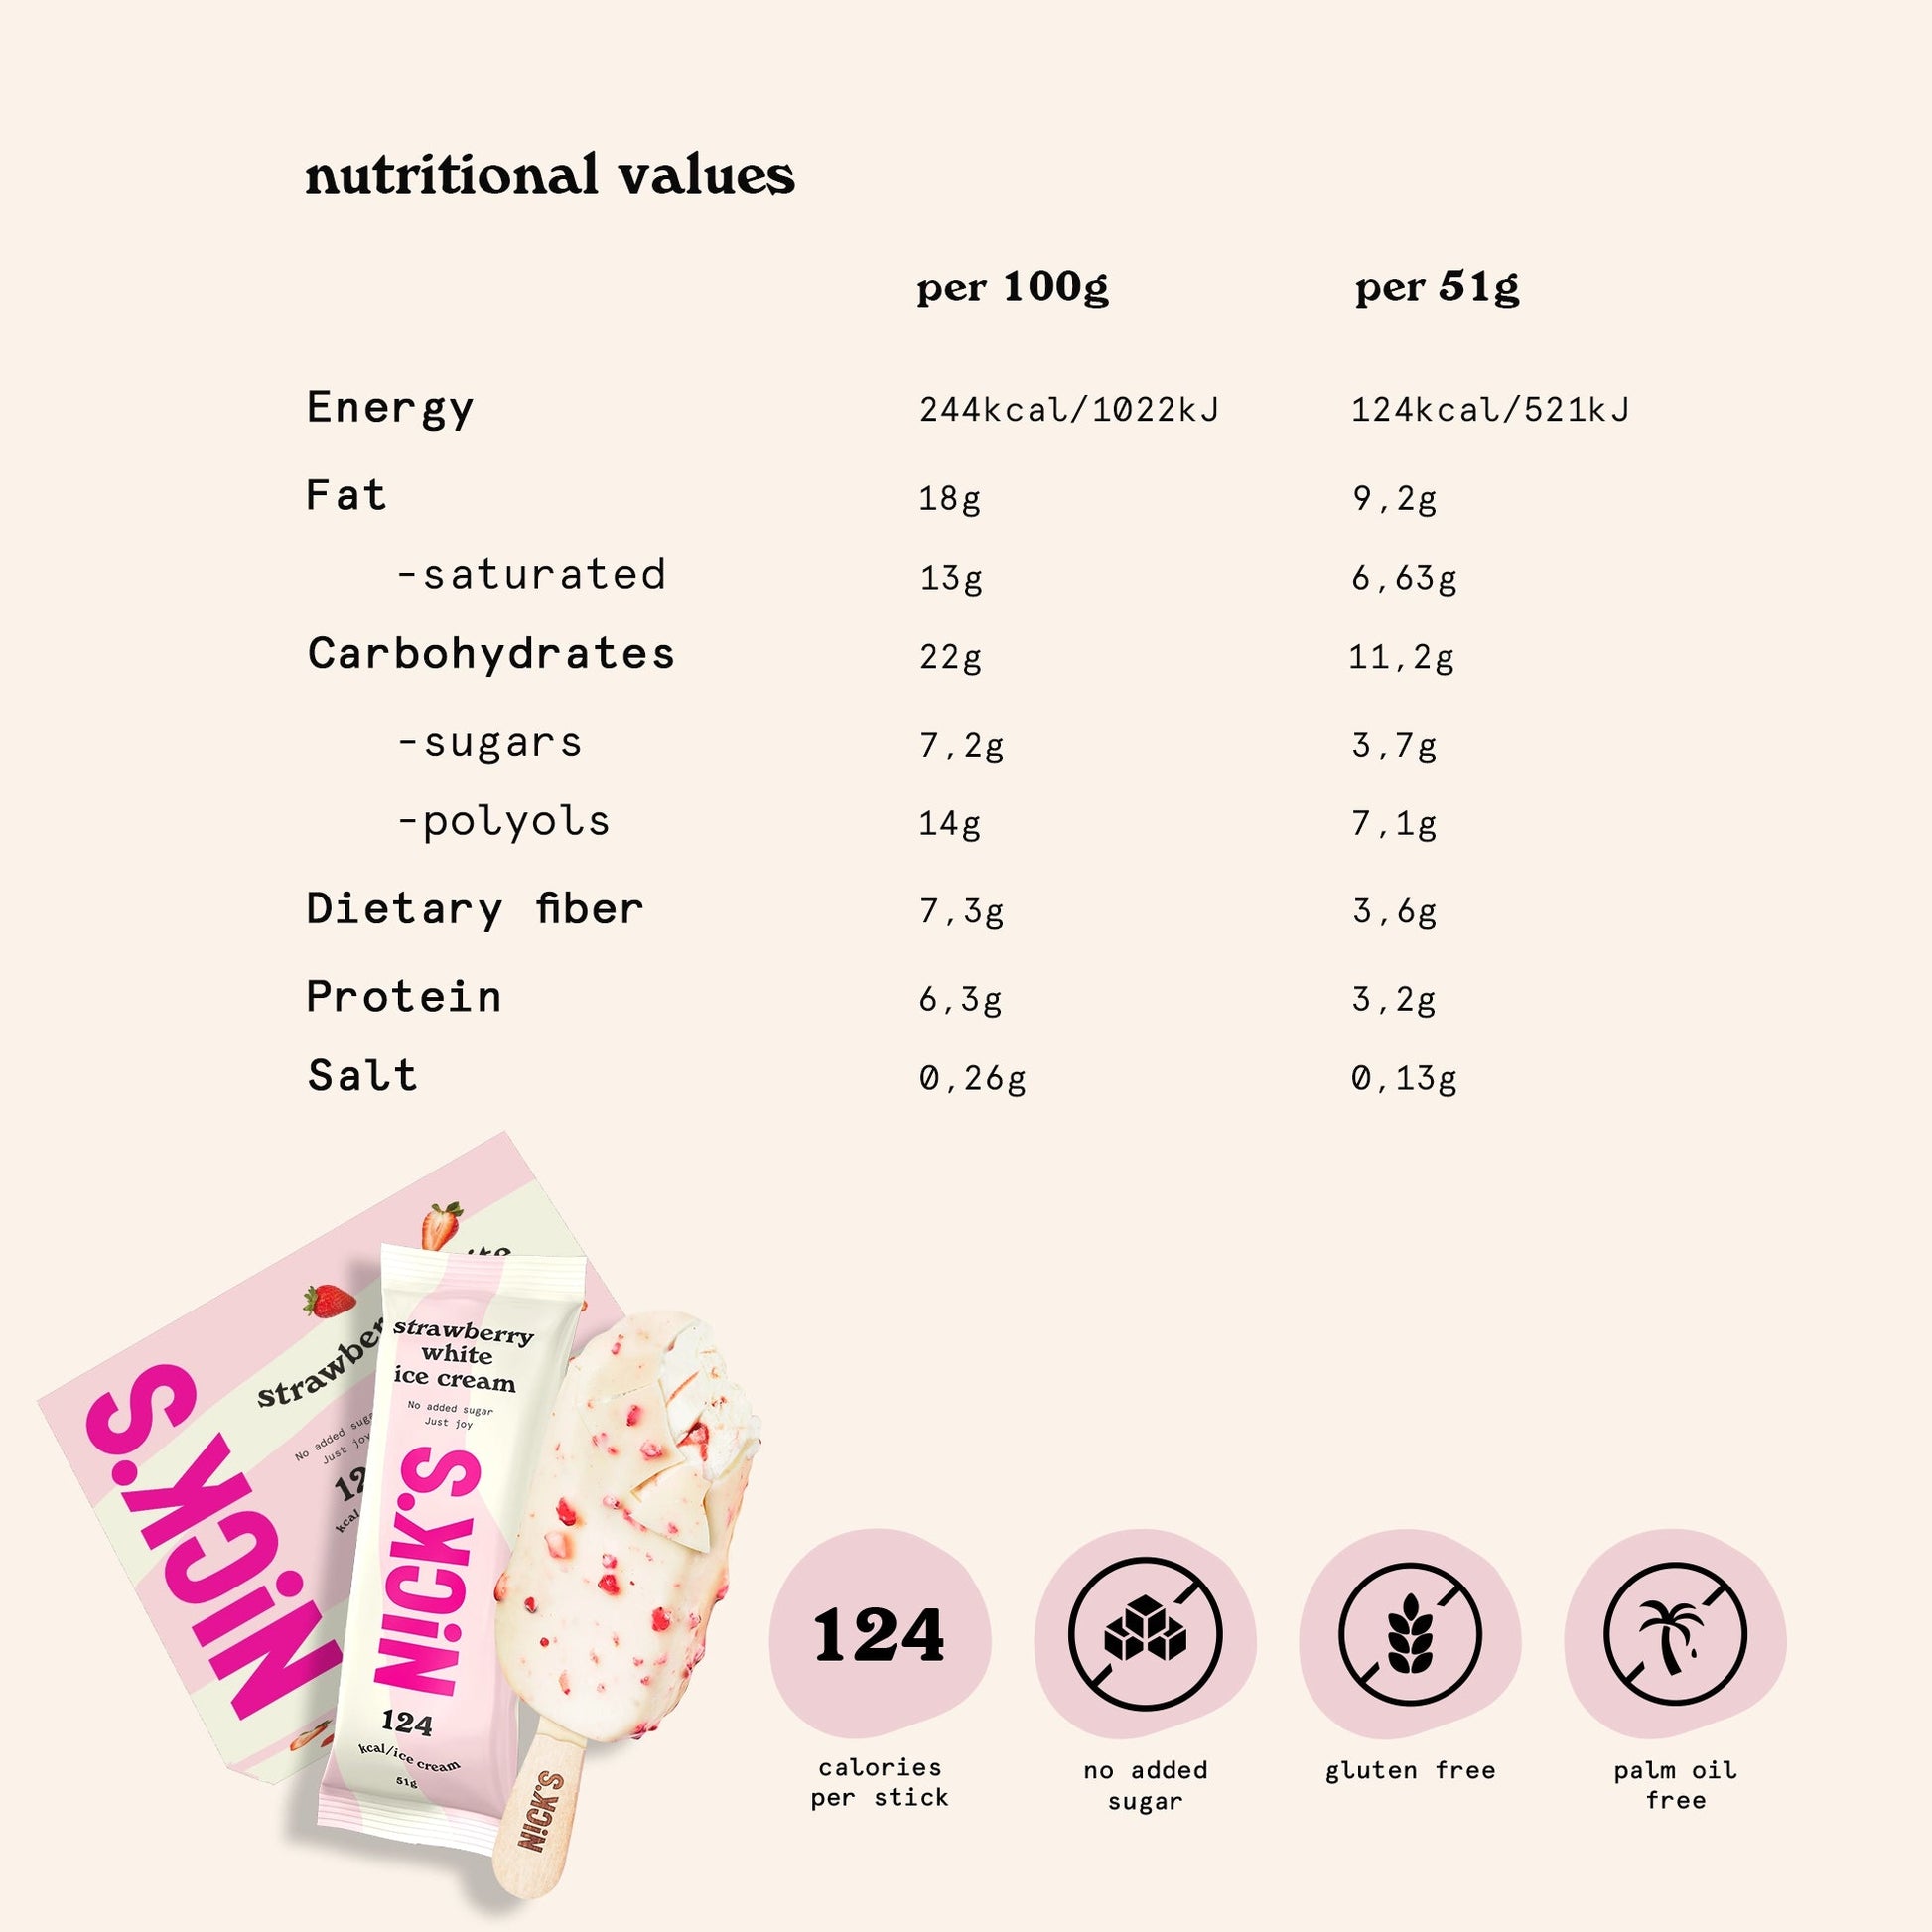 NICK'S jäätis-Pulgajäätis "strawberry white" multipakk 24 x 51ml - njom.ee